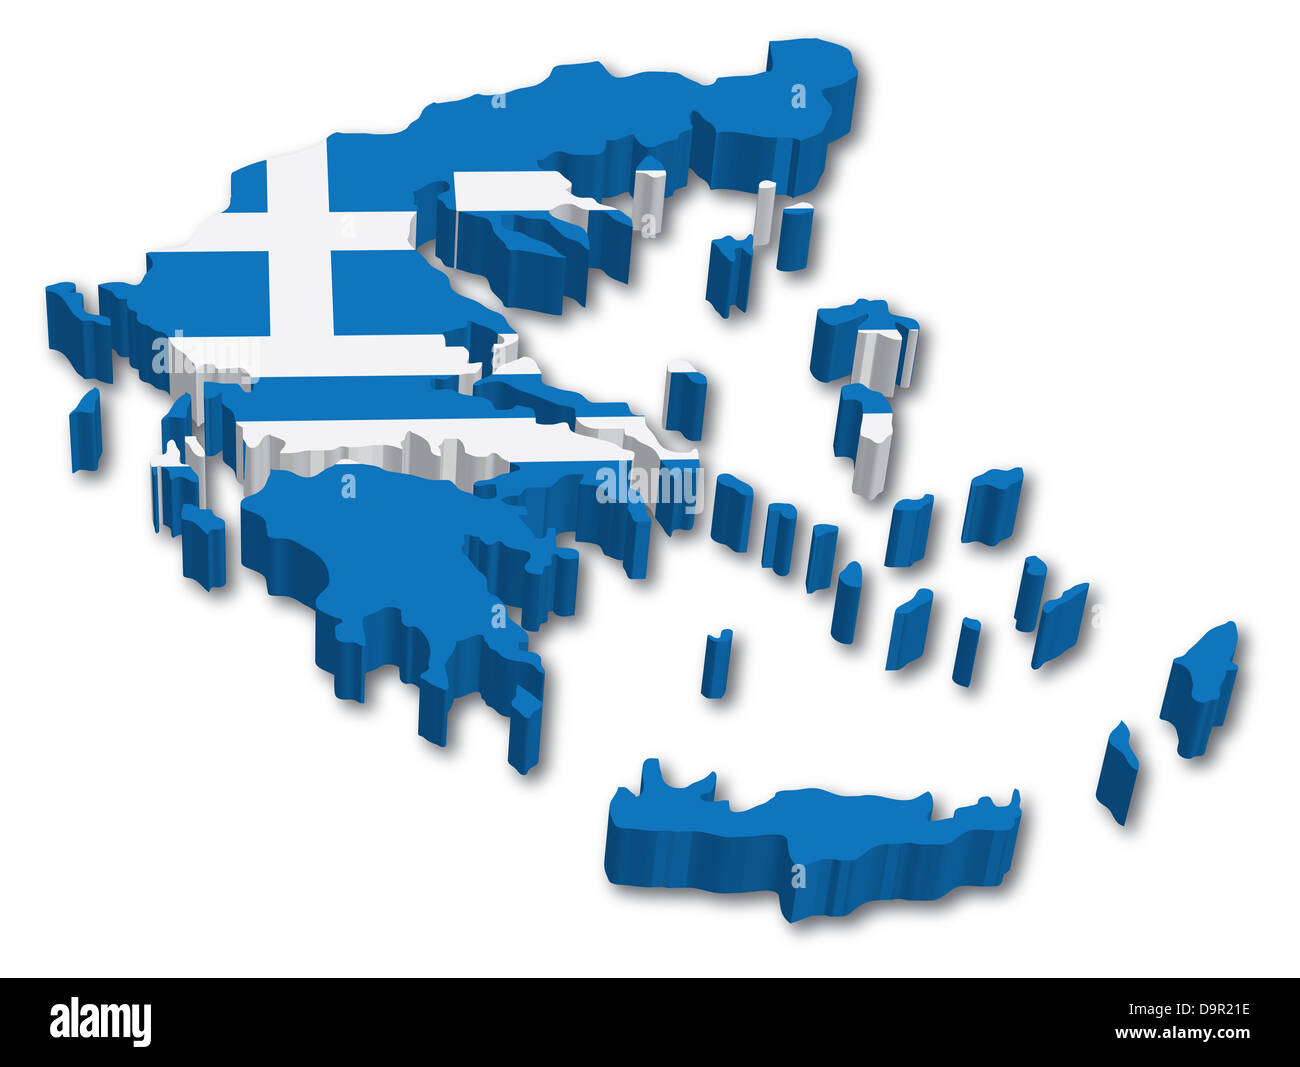 Griechenland-3D-Karte mit Abbildung der Flagge auf weißem Hintergrund  Stockfotografie - Alamy